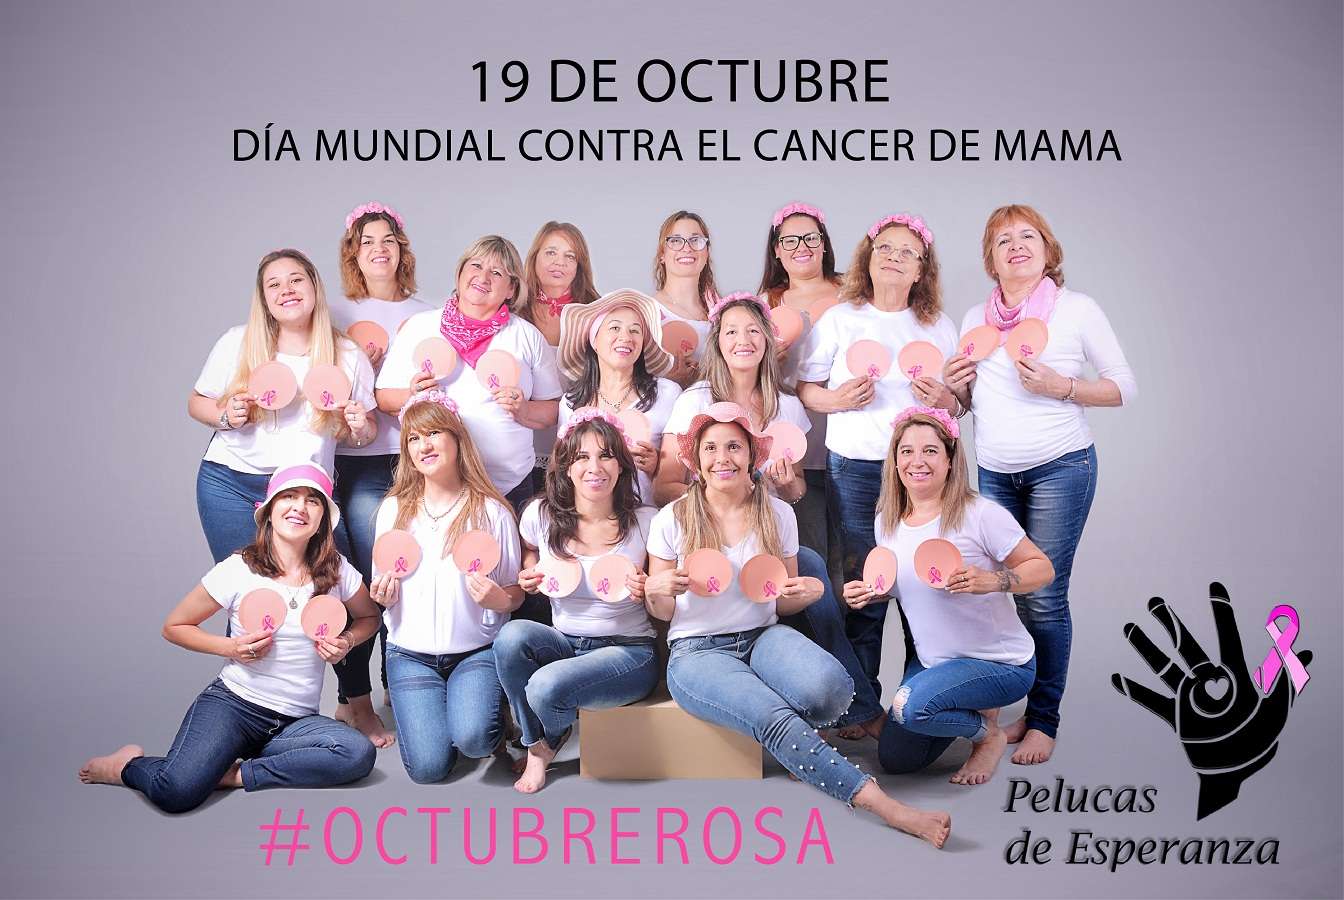 Pelucas de Esperanza lanza la jornada "Juntas podemos vencer el cáncer de mama"